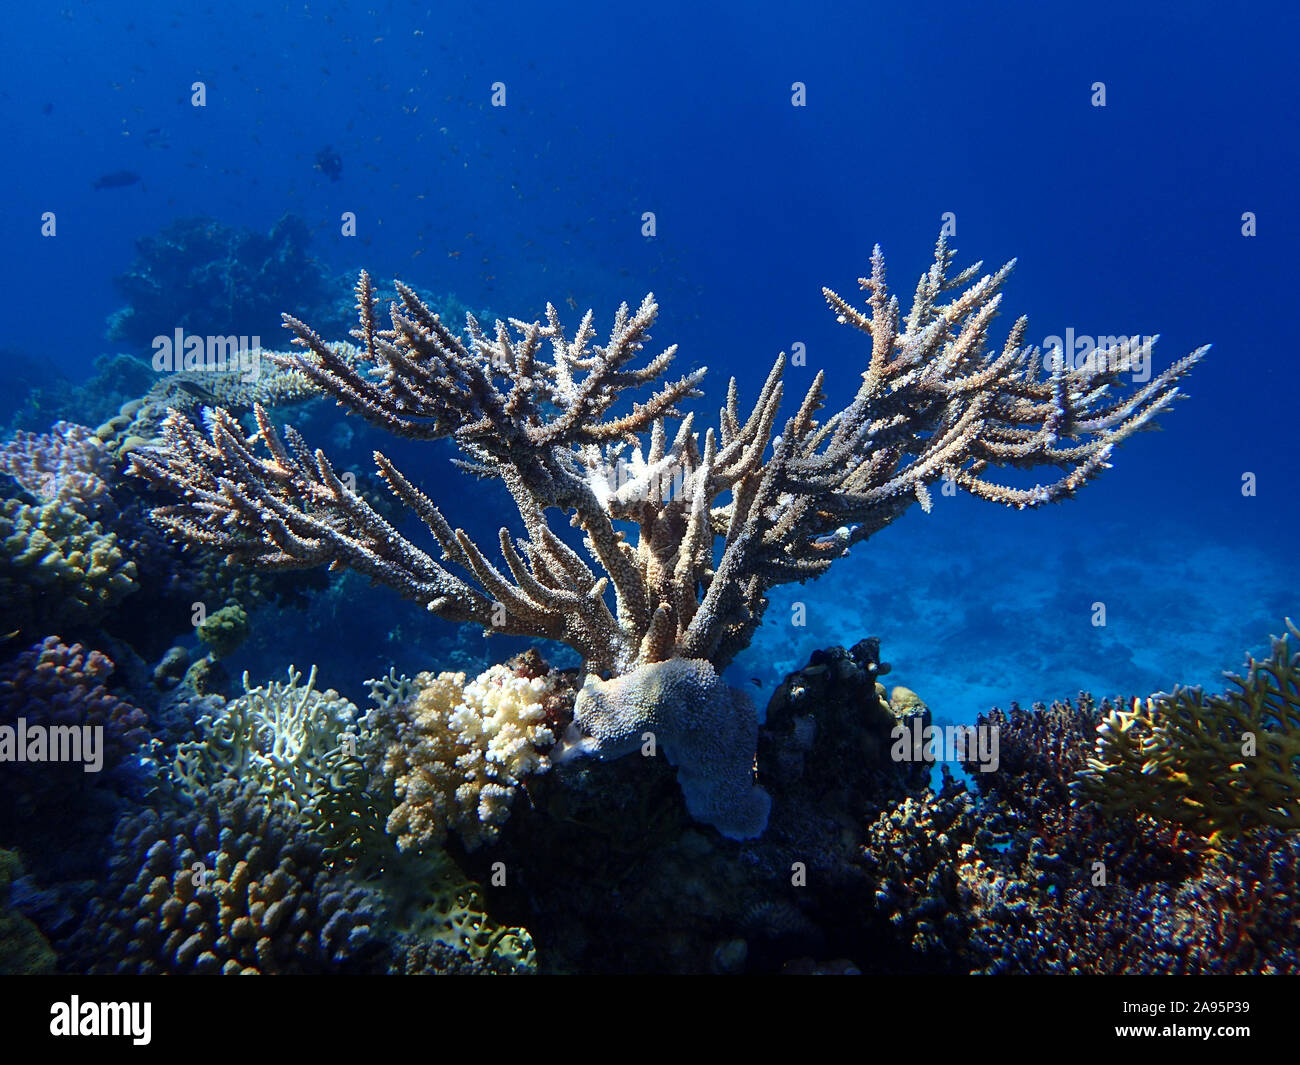 Corno di cervo corallo nell'oceano. Disco Stanghorn Corallo in mare nei pressi di Coral Reef nelle profondità marine. Scuola di pesce tropicale. Foto Stock